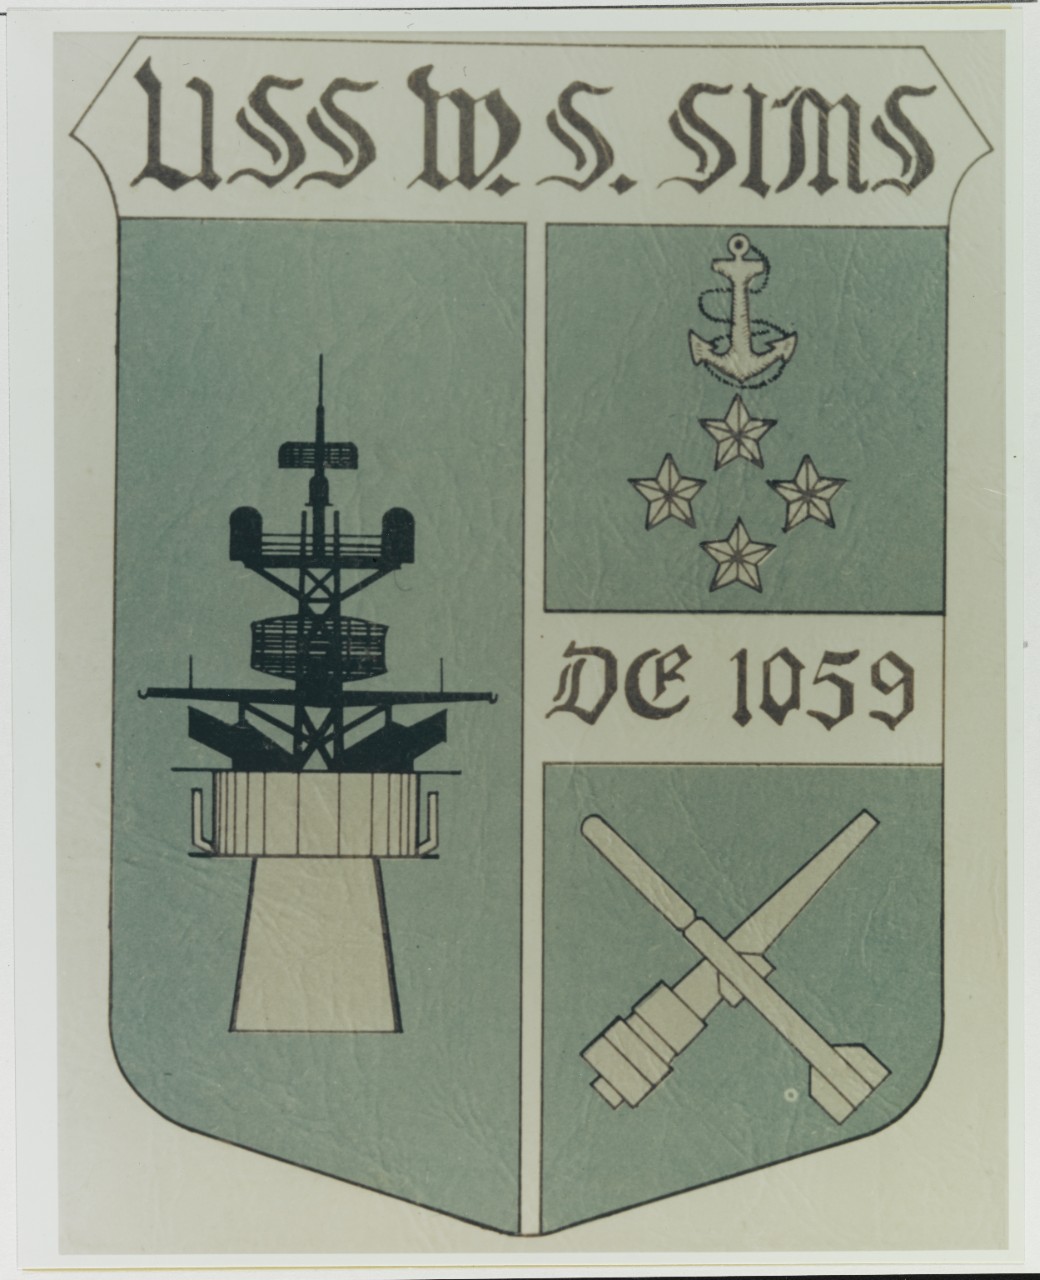 Insignia: USS W. S. SIMS (DE-1059)